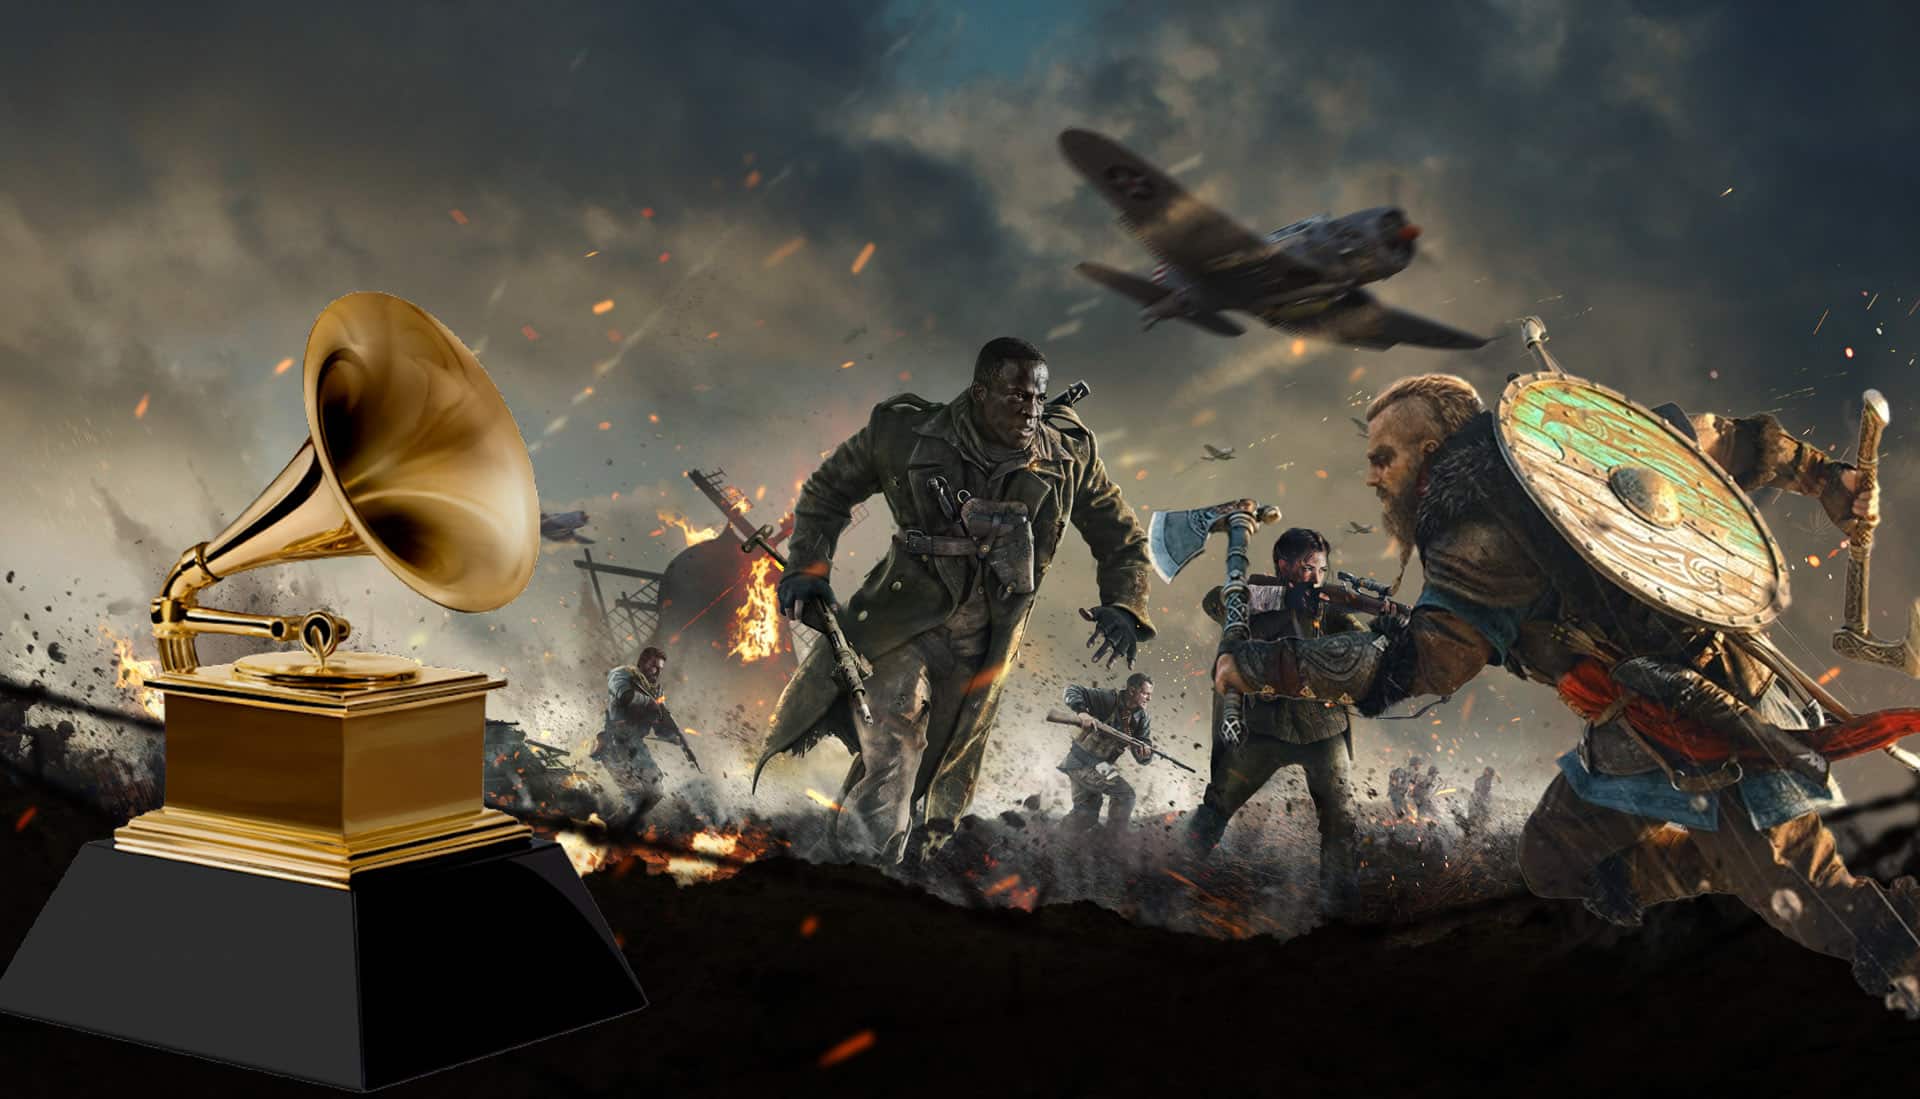 Assassin's Creed Valhalla, Call Of Duty Vanguard y otros son nominados al Grammy de Mejor Banda Sonora, GamersRD